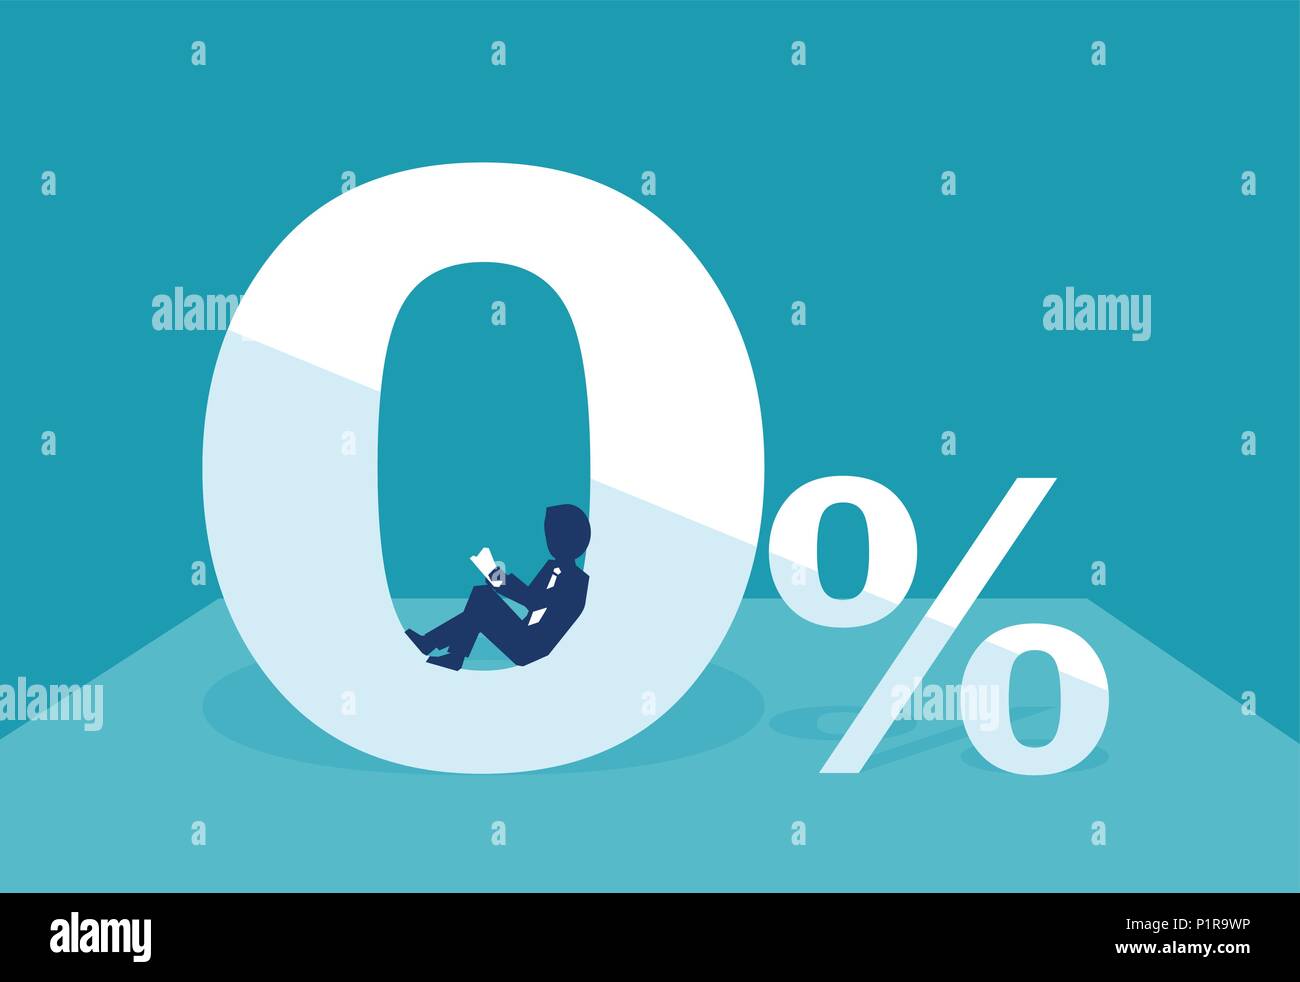 Flat Style des Menschen mit geringen Prozentsatz für Geld Darlehen auf blauem Hintergrund. Stock Vektor